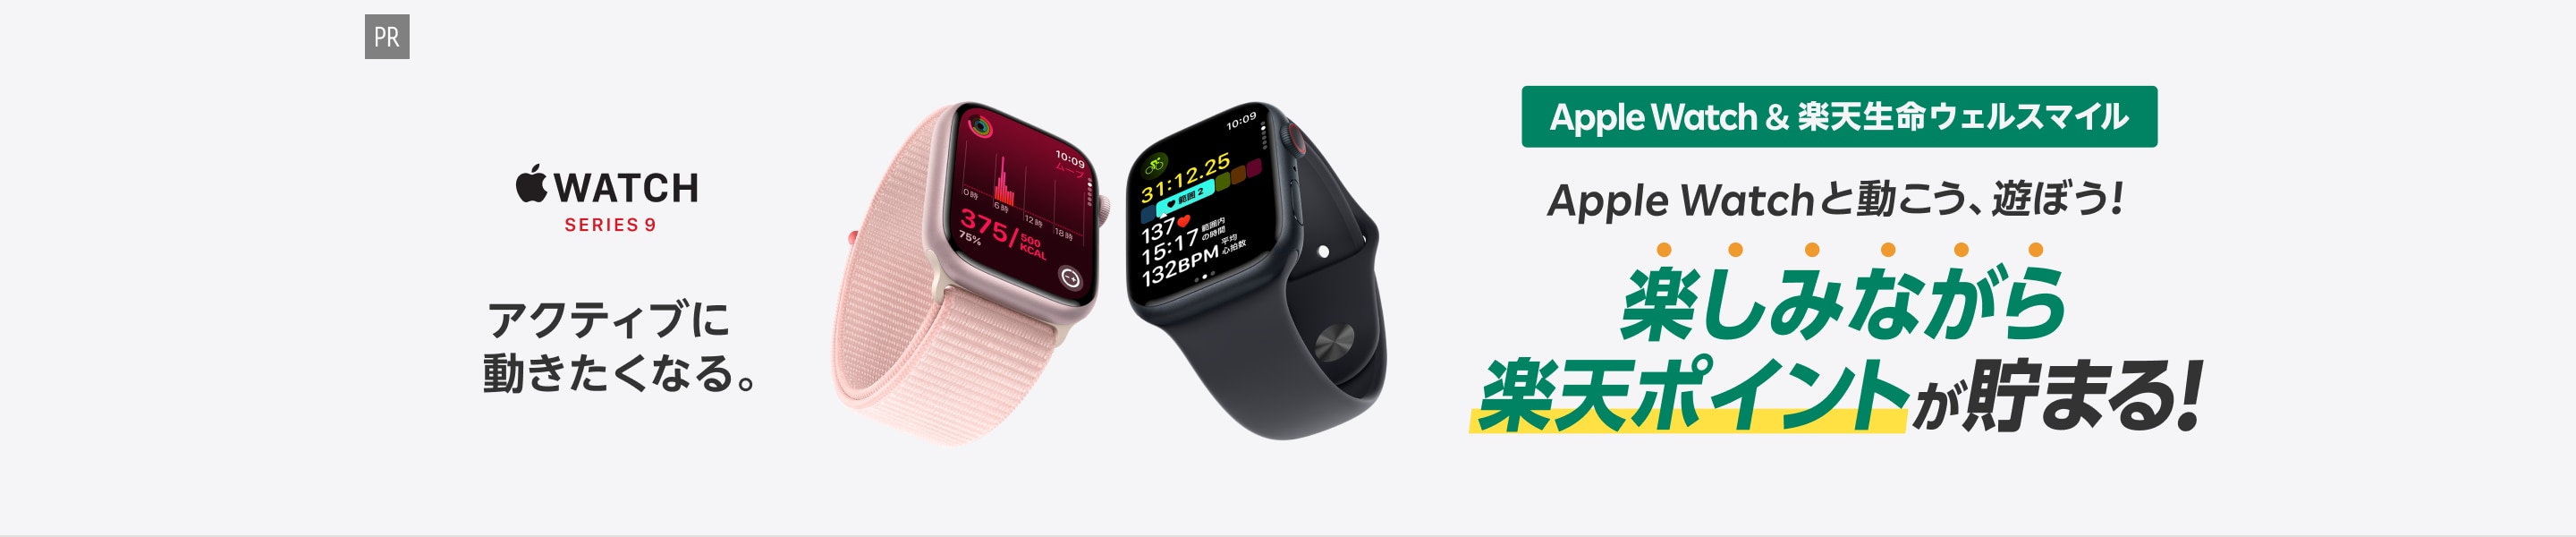 [PR]Apple Watch&楽天生命ウェルスマイル Apple Watchと動こう、遊ぼう！楽しみながら楽天ポイントが貯まる！